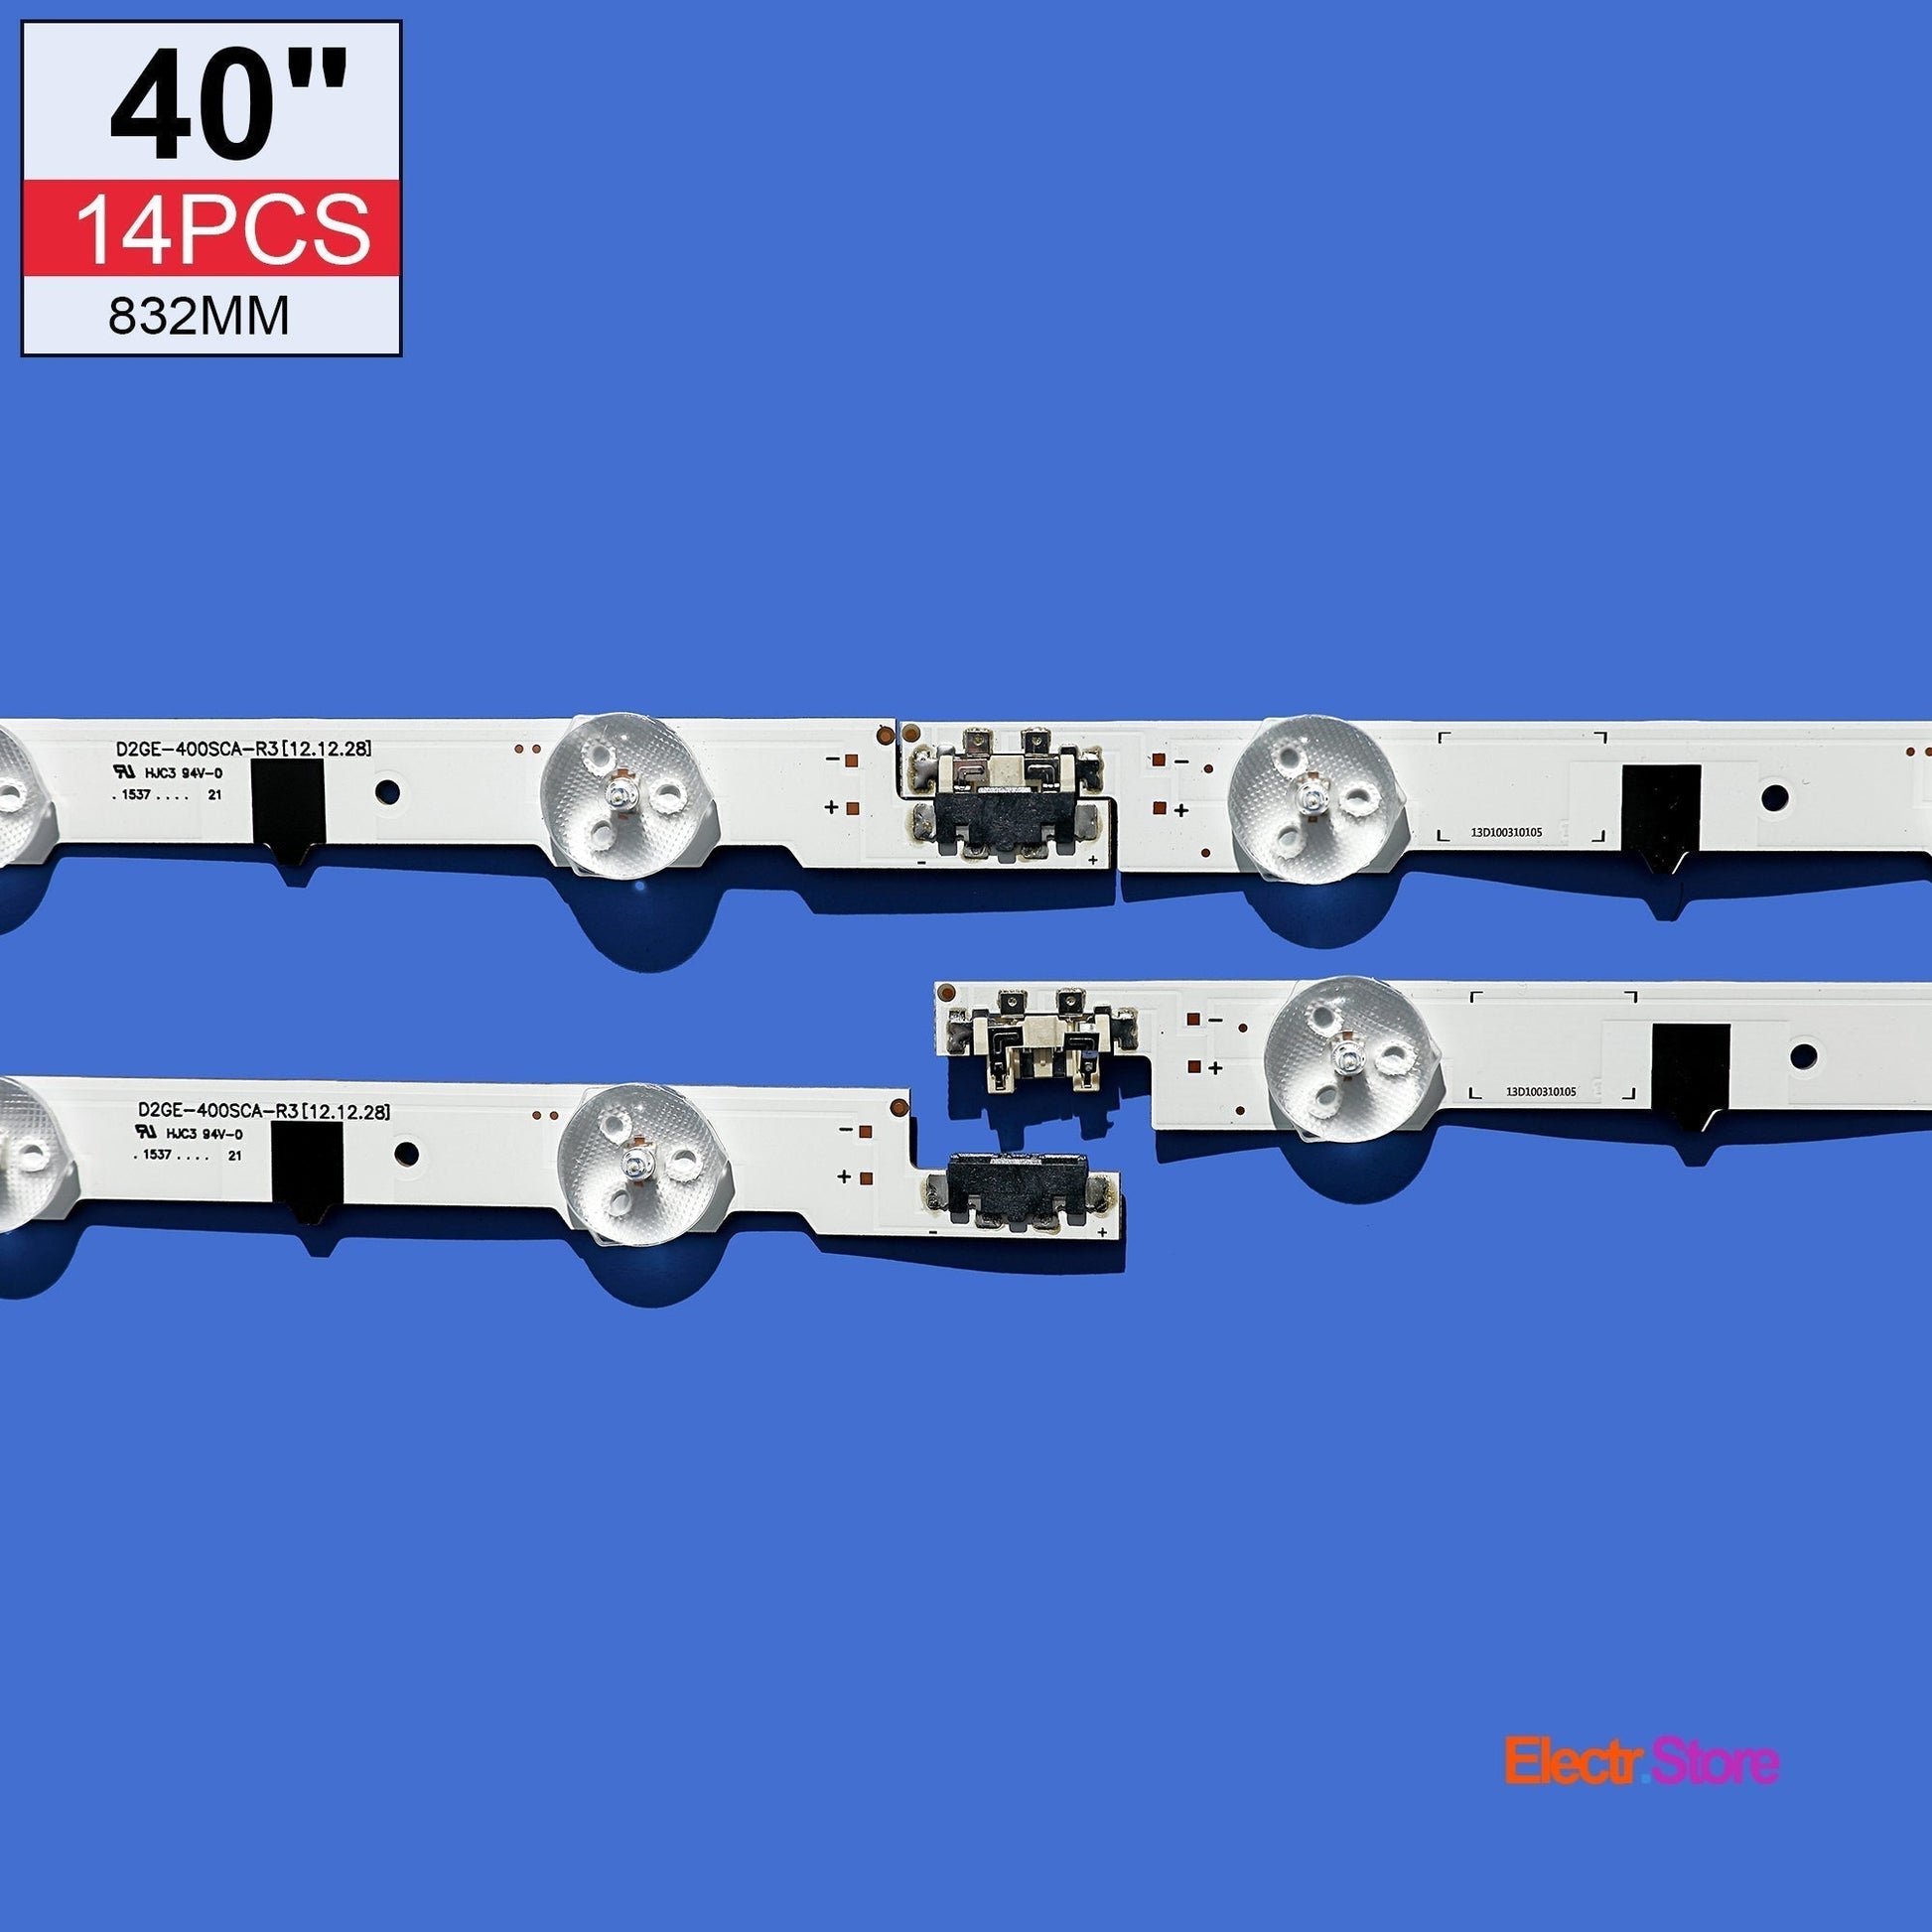 LED Backlight Strip Kits, 2013SVS40F, D2GE-400SCA-R3/D2GE-400SCB-R3, BN96-25304A/BN96-25305A (14 pc/kit), for TV 40" SAMSUNG: UE40F6740, UE40F5700 40" D2GE-400SCA-R3 D2GE-400SCB-R3 LED Backlights Samsung Electr.Store